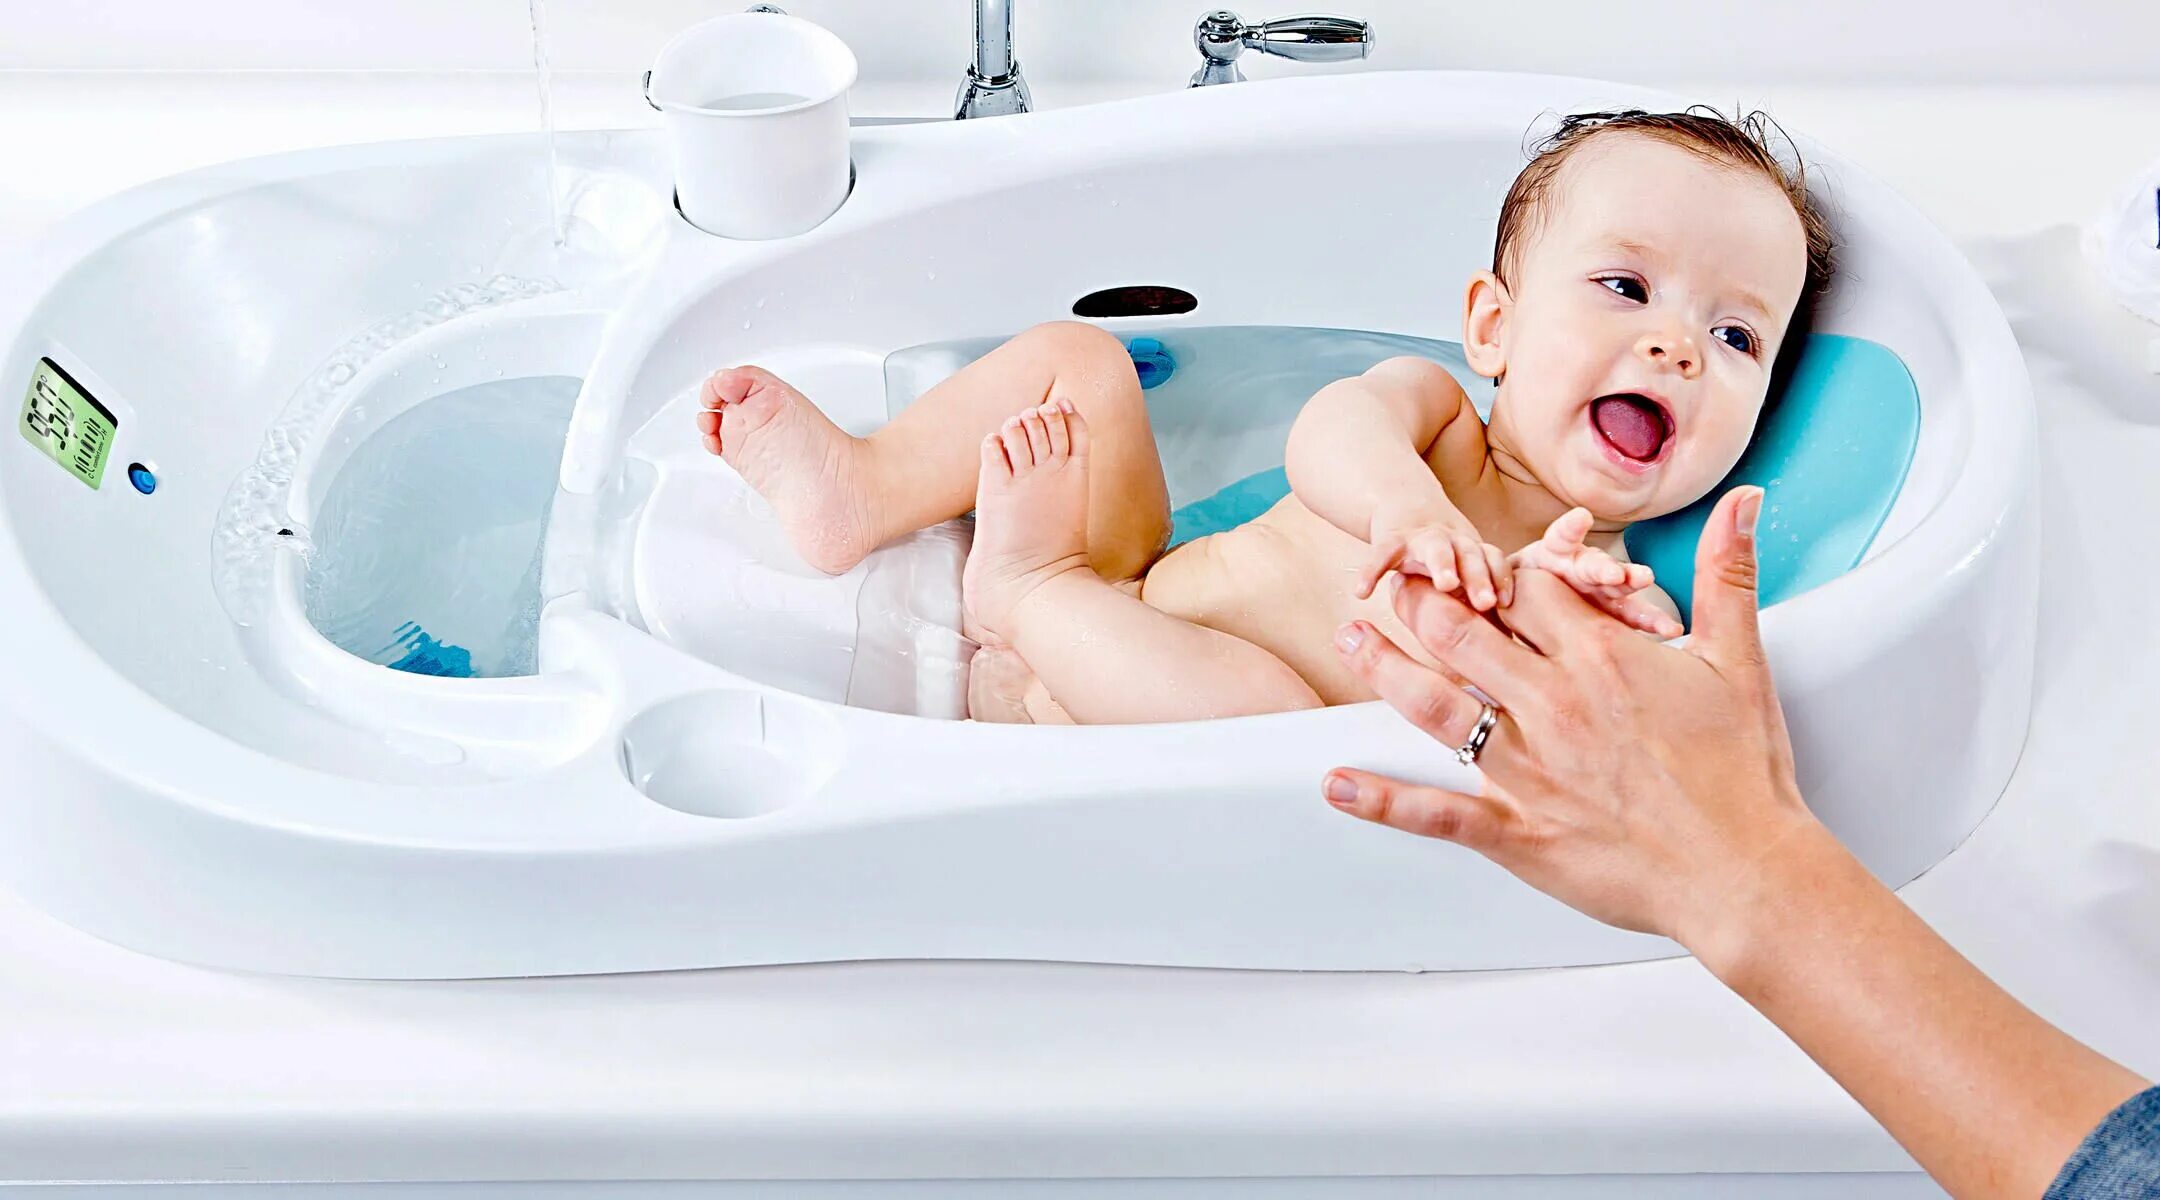 4moms ванночка для купания. Ванна для младенцев для купания. Раковина для купания младенцев. Гигиенические ванны для новорожденных.